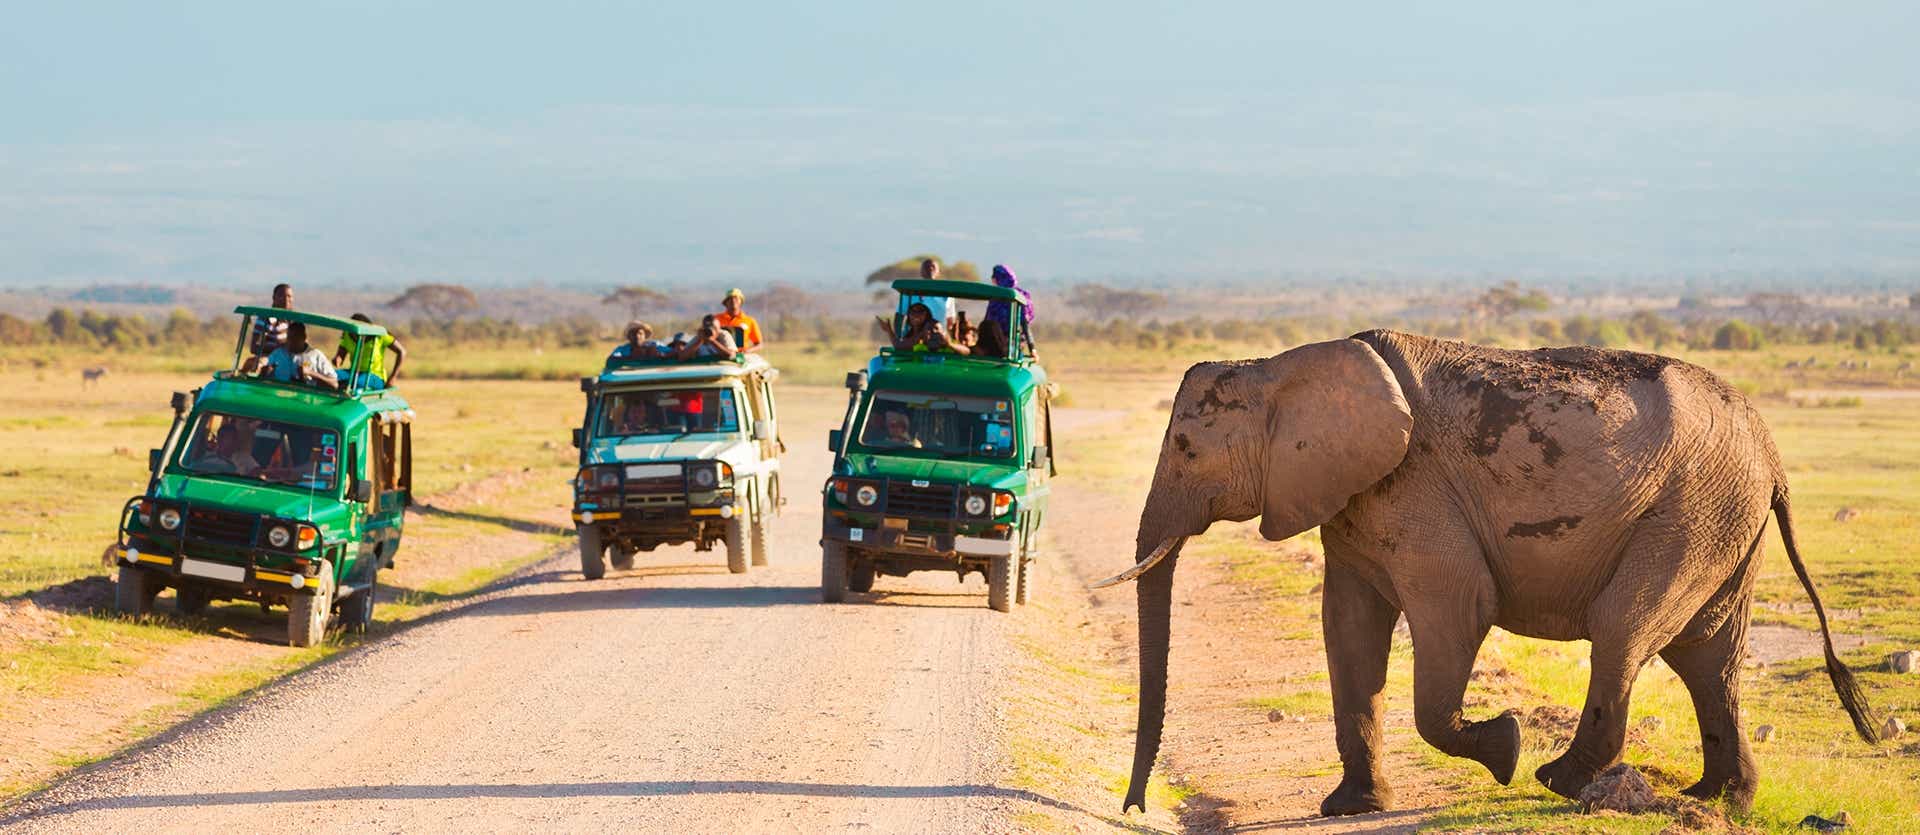 Parque Nacional de Amboseli <span class="iconos separador"></span> Kenia